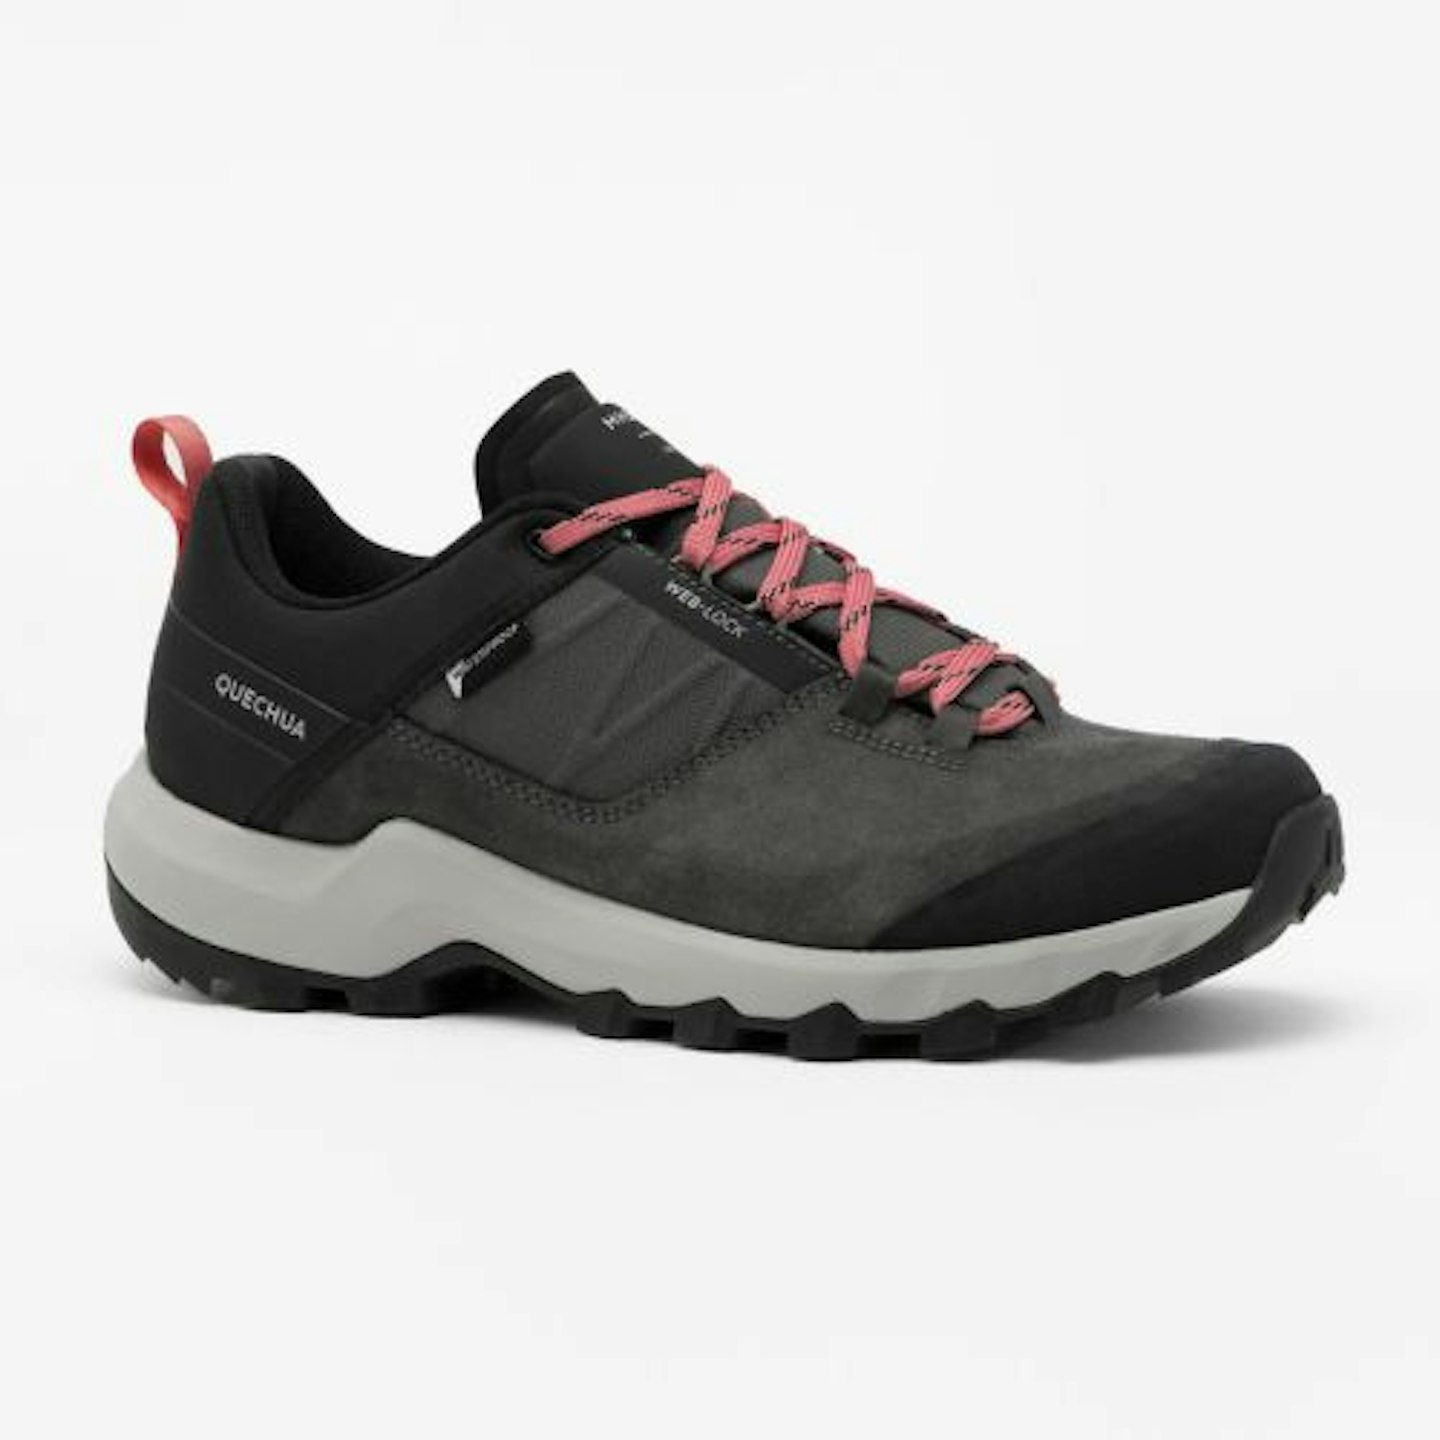 QUECHUA Women's waterproof mountain walking shoes - MH500 Grey